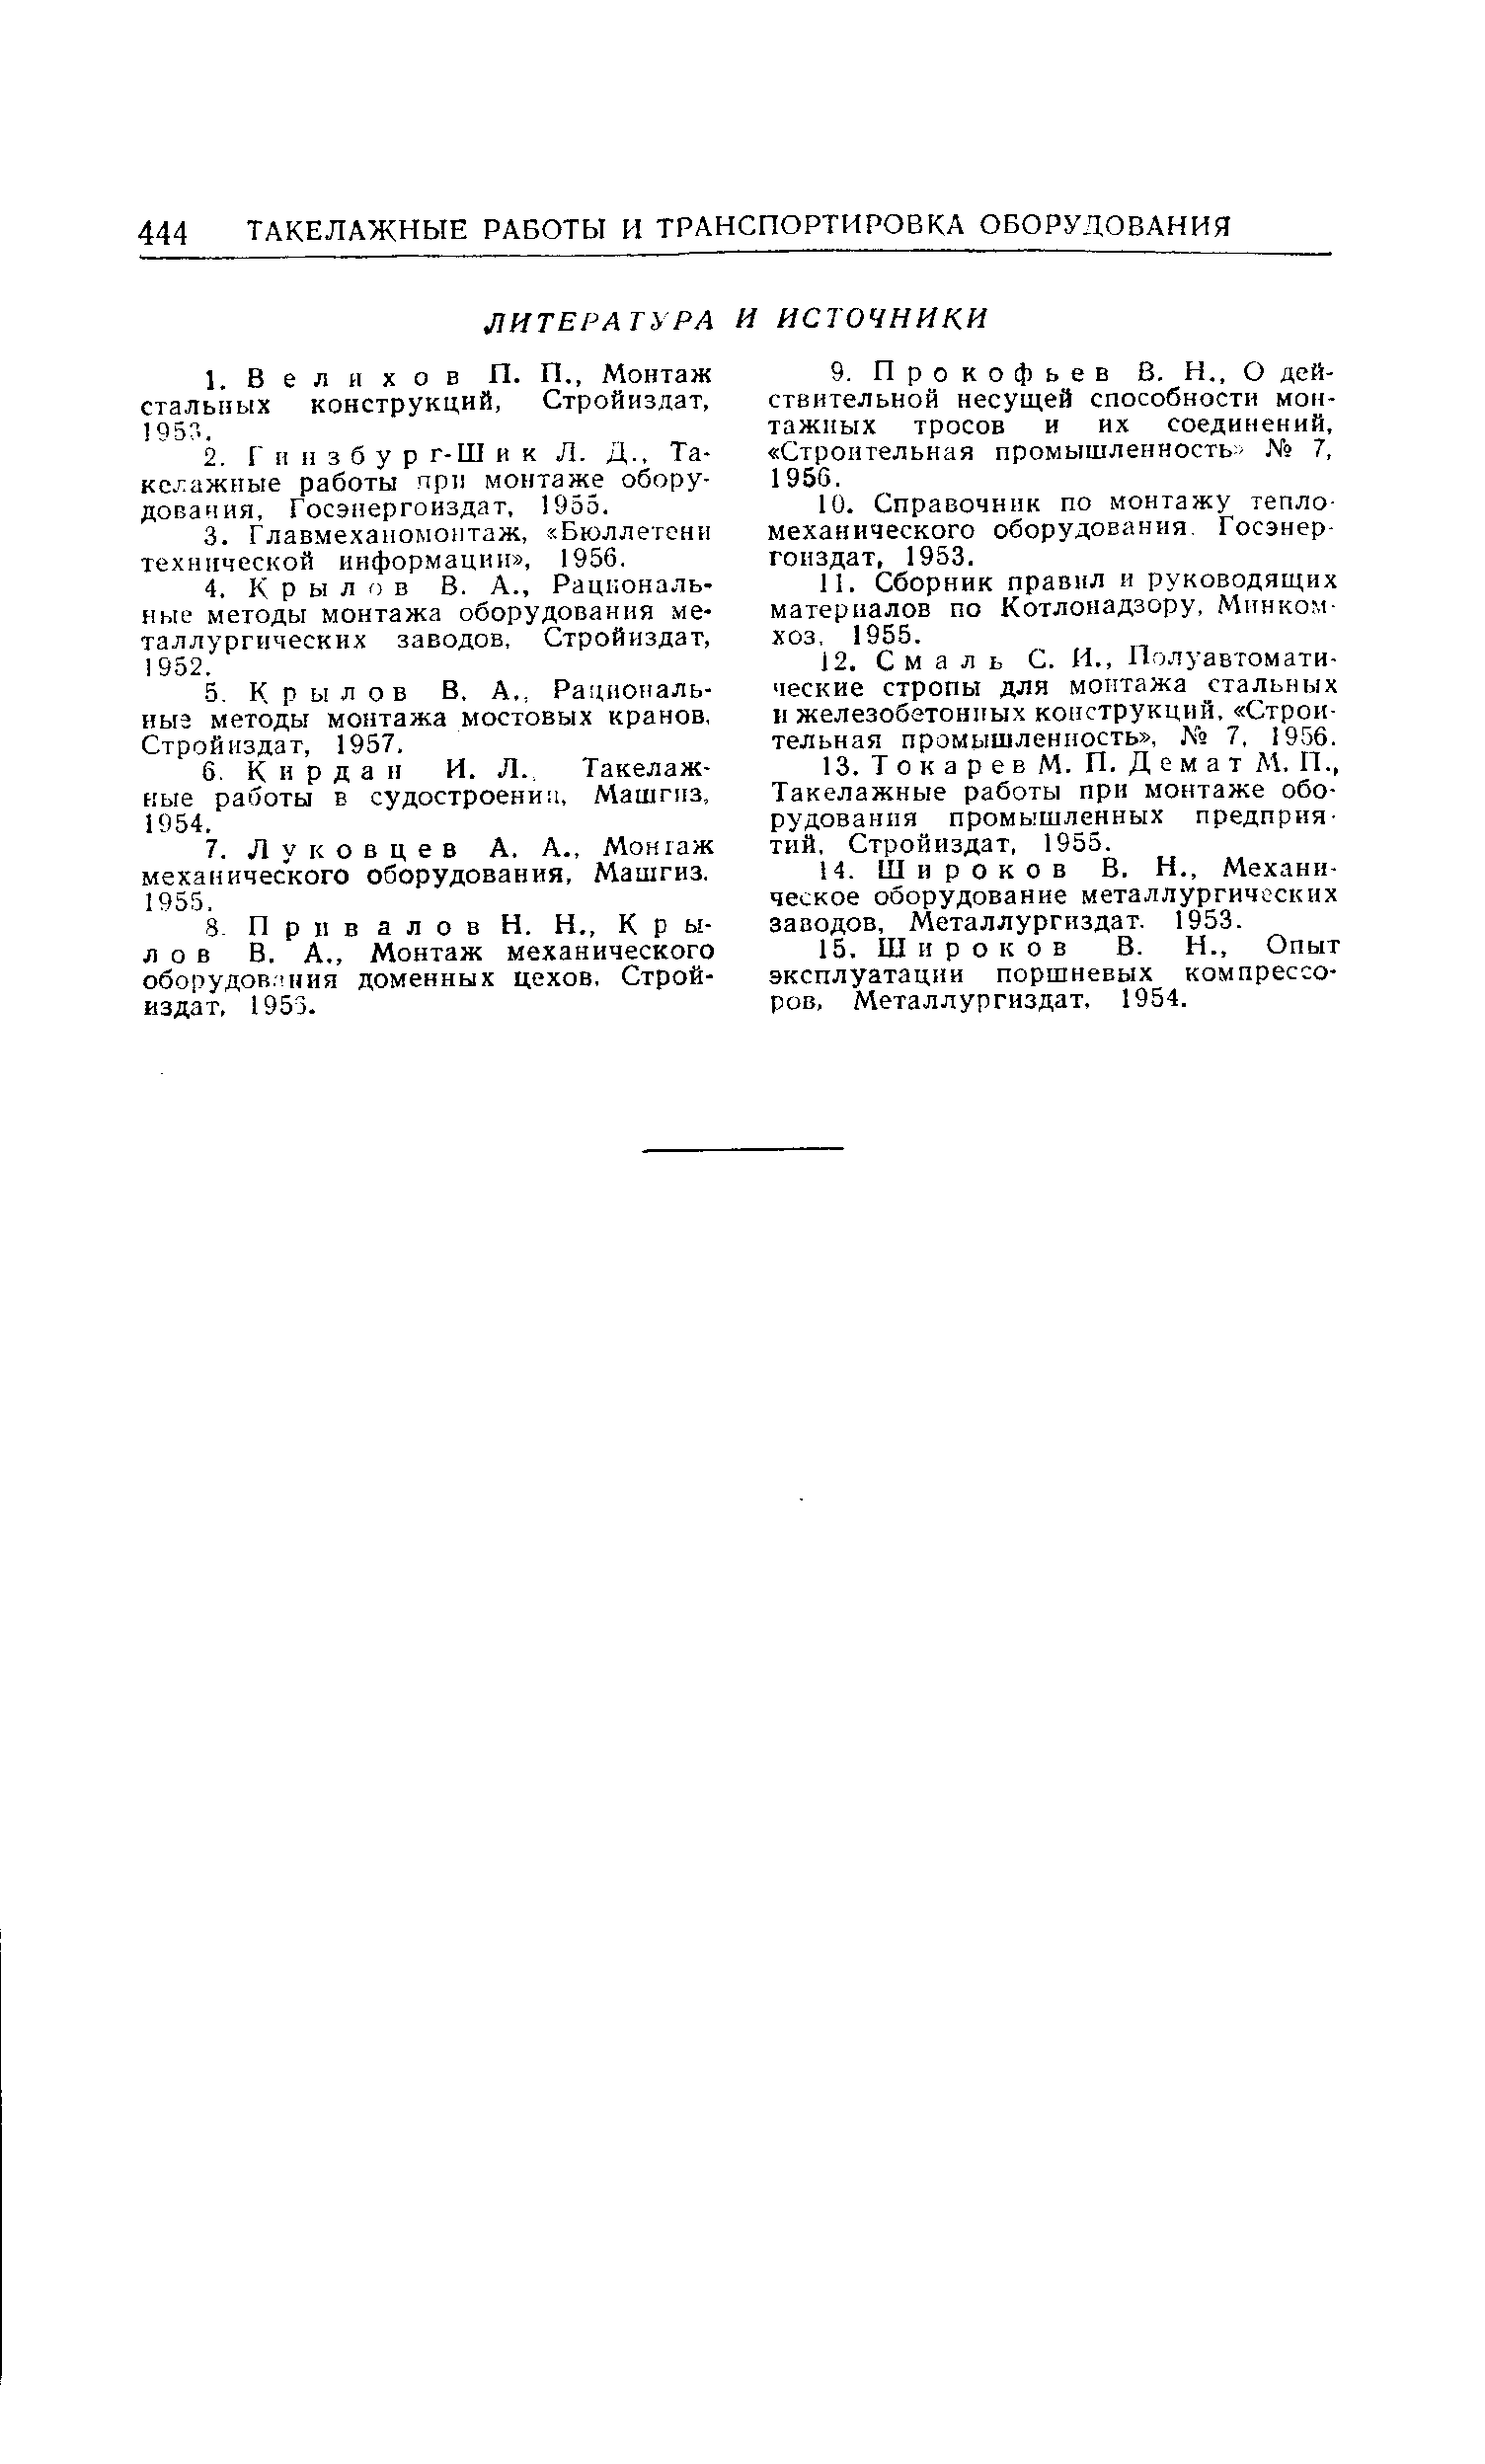 Сборник правил и руководящих материалов по Котлонадзору, Минком-хоз, 1955.